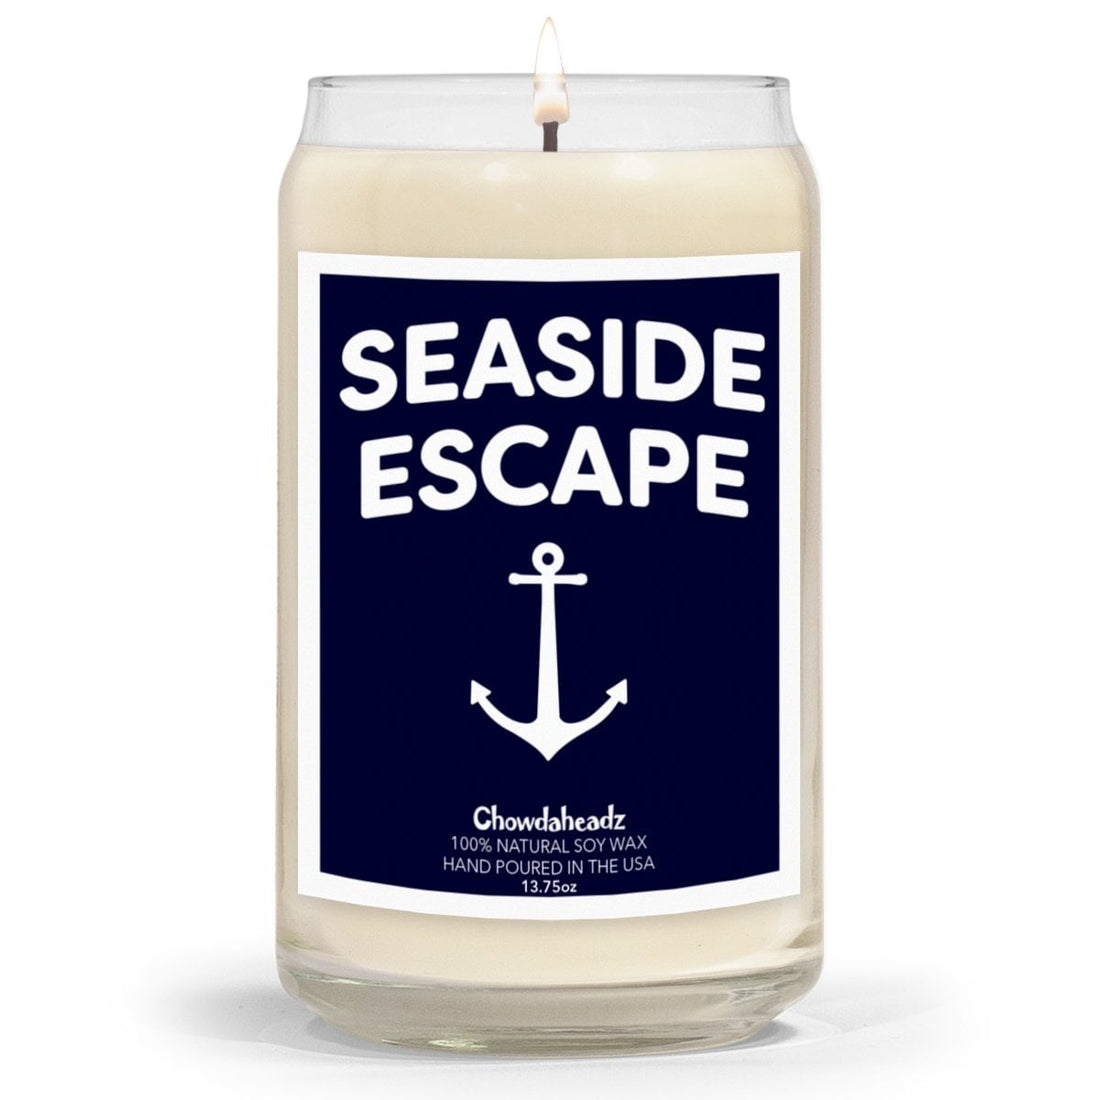 Seaside Escape 13.75oz Candle